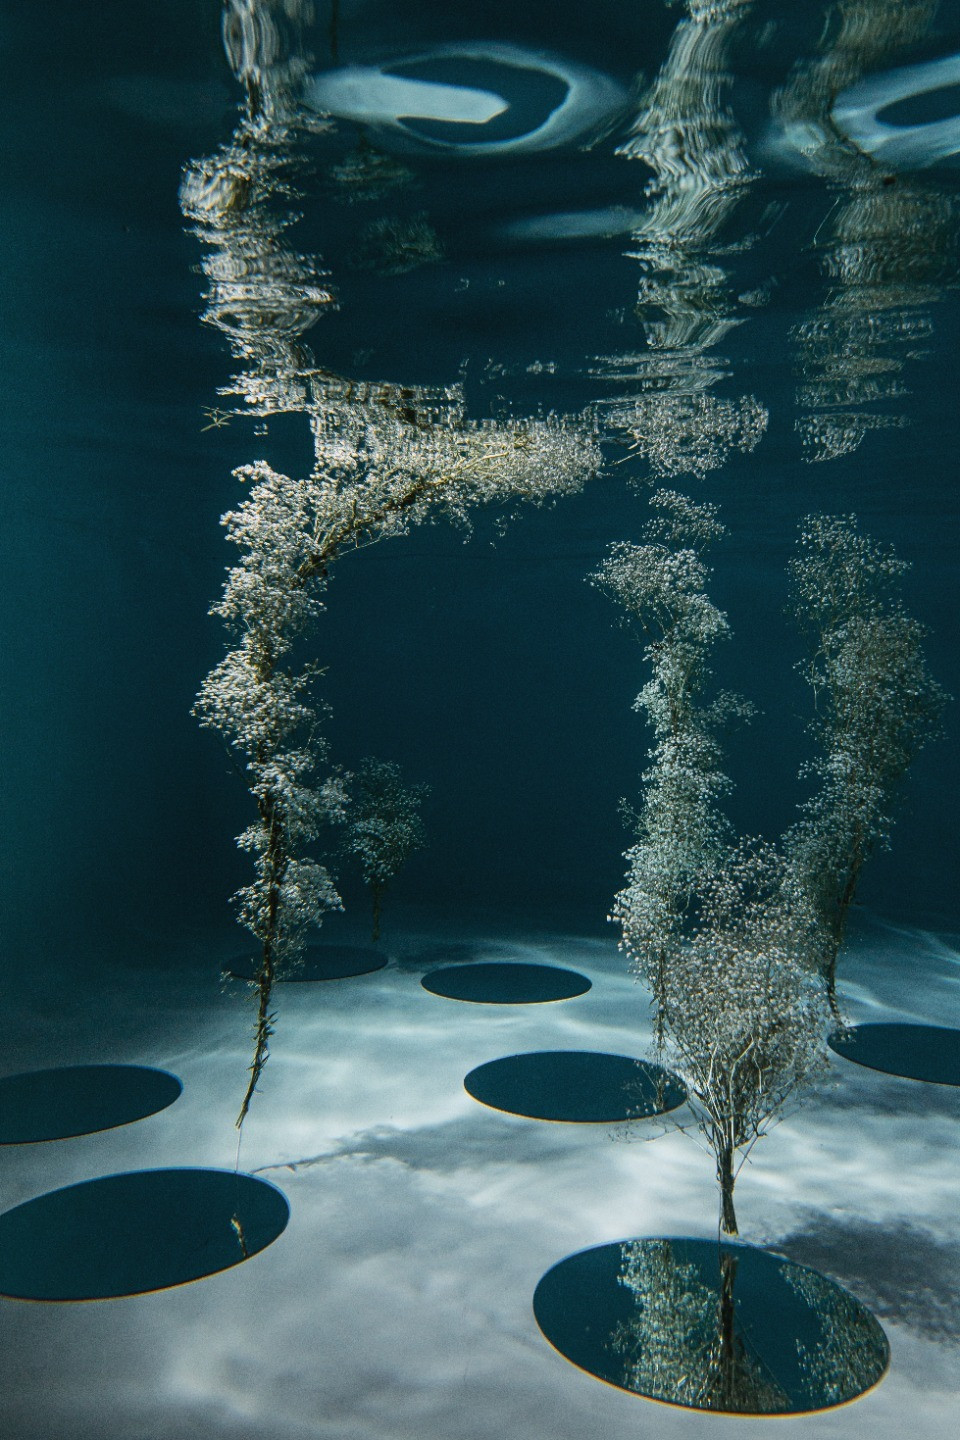 ФОТО ИЗ СТАТЬИ: Under water: необычная стилизованная фотосессия под водой